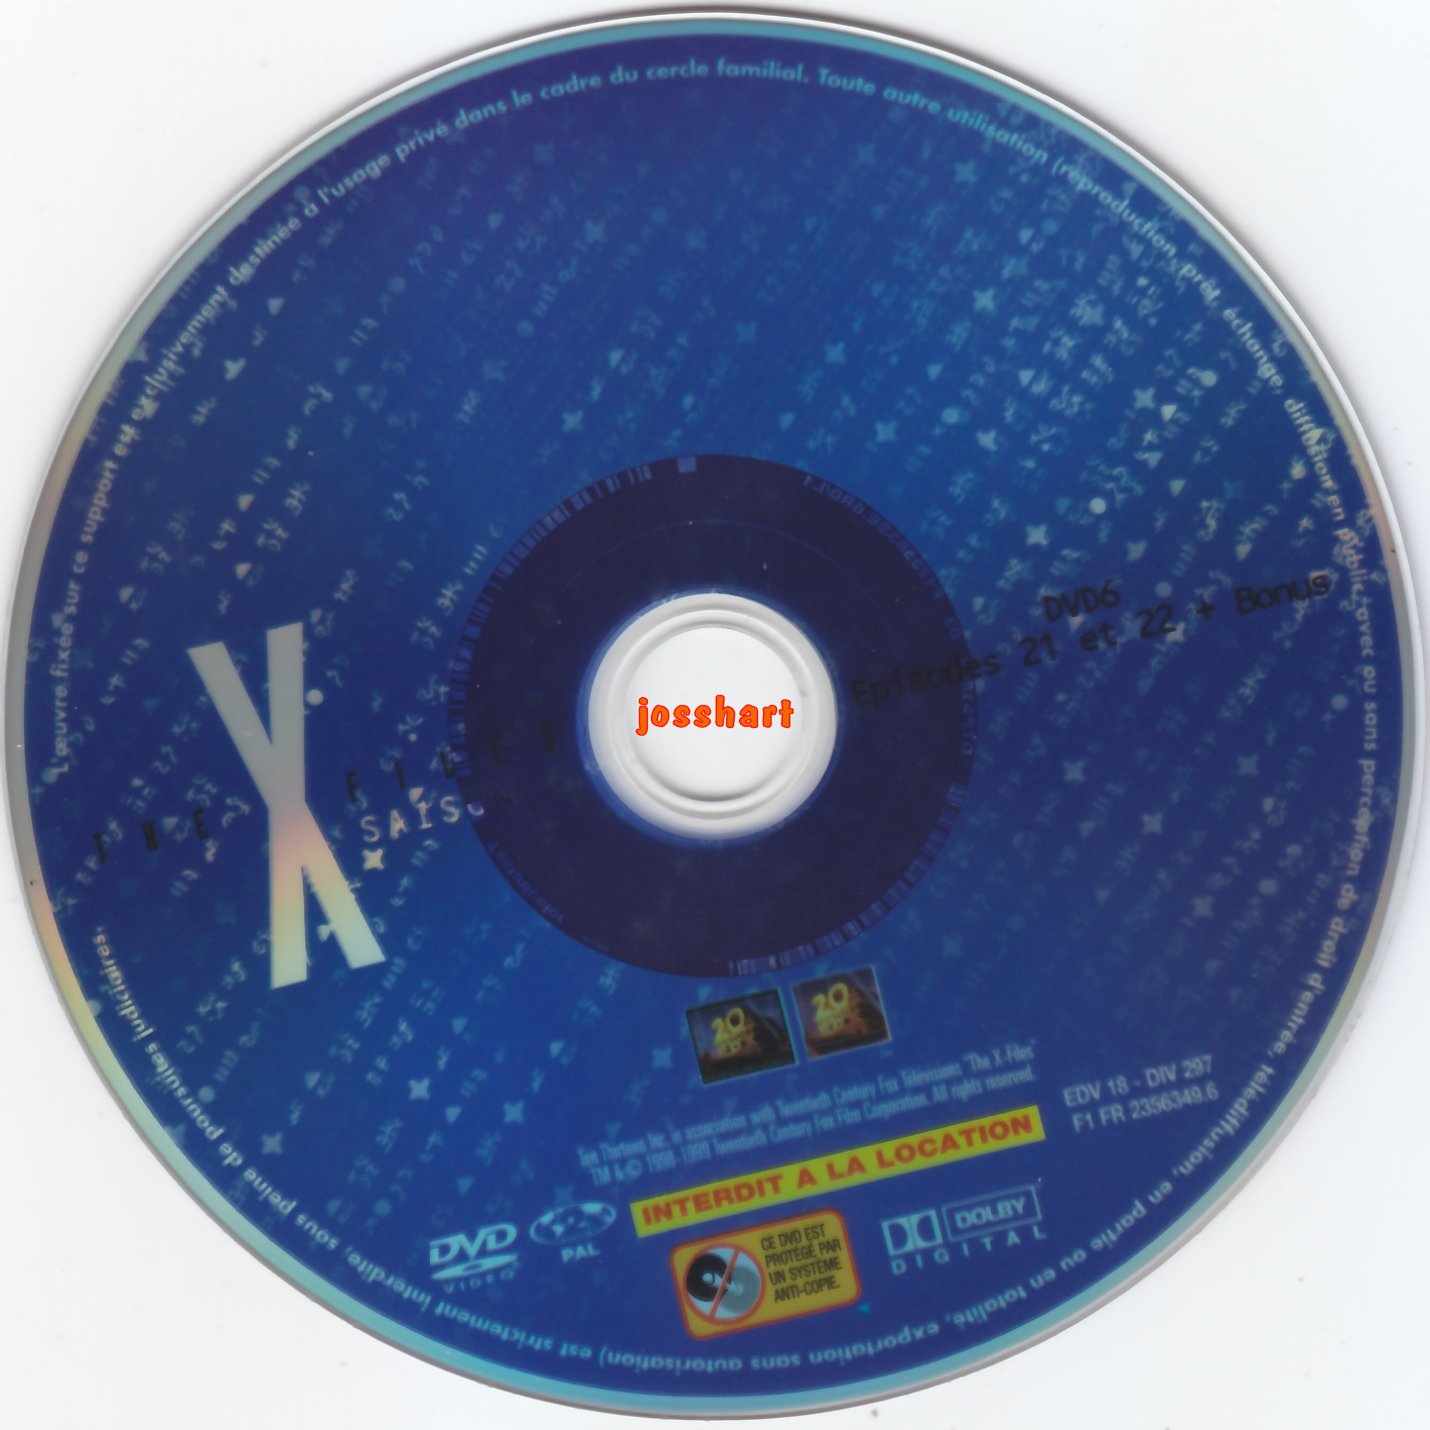 The X Files Saison 6 DVD 6 v2